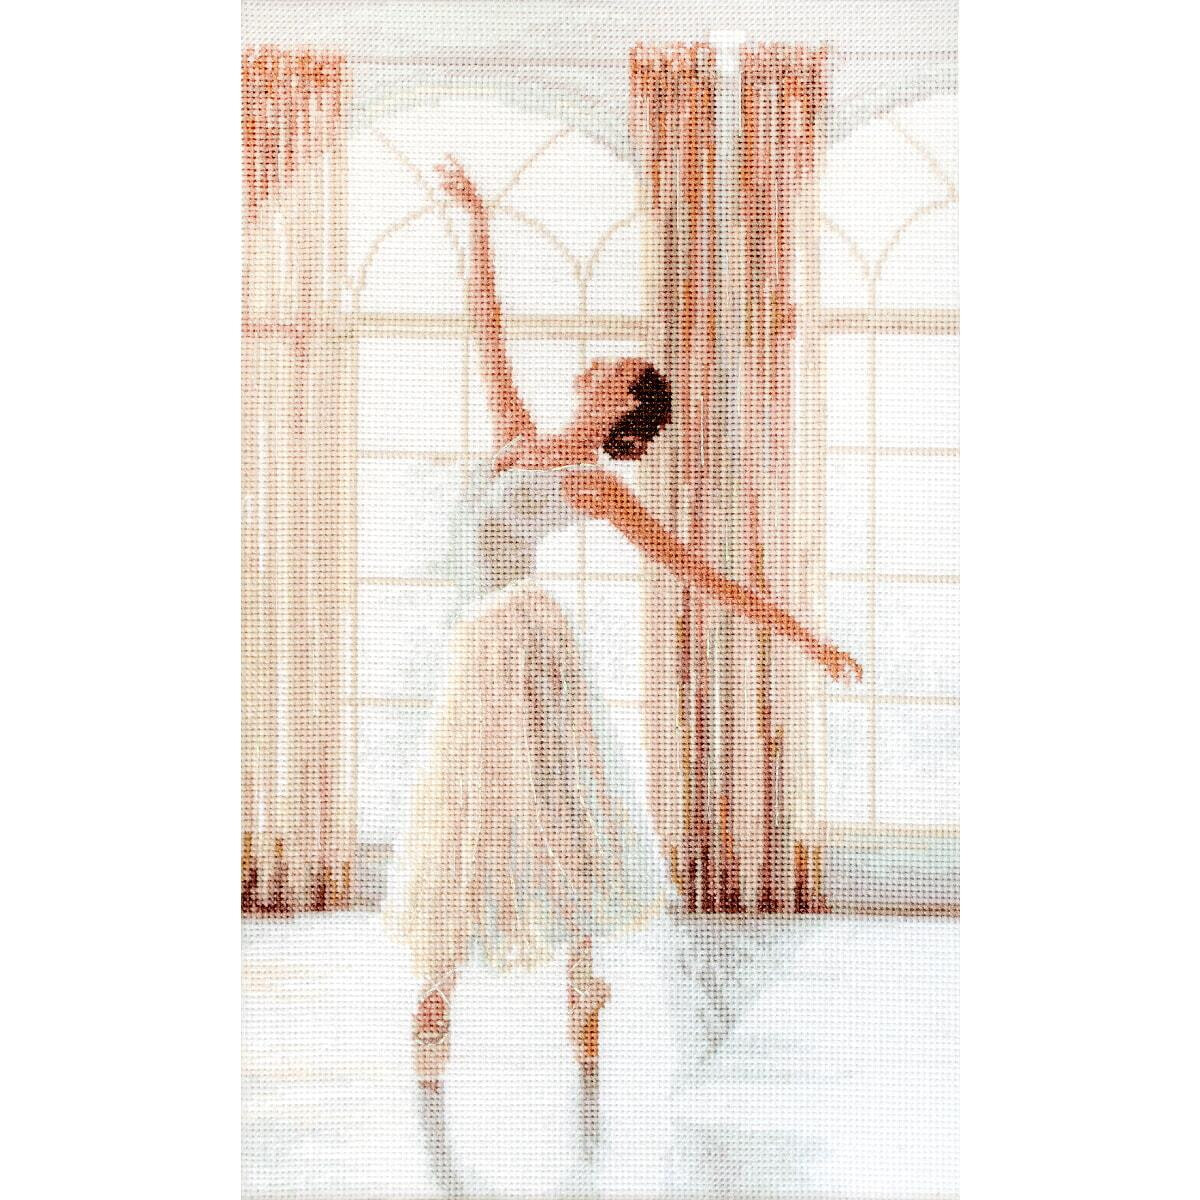 Eine Ballerina in einem weißen Tutu tanzt anmutig...